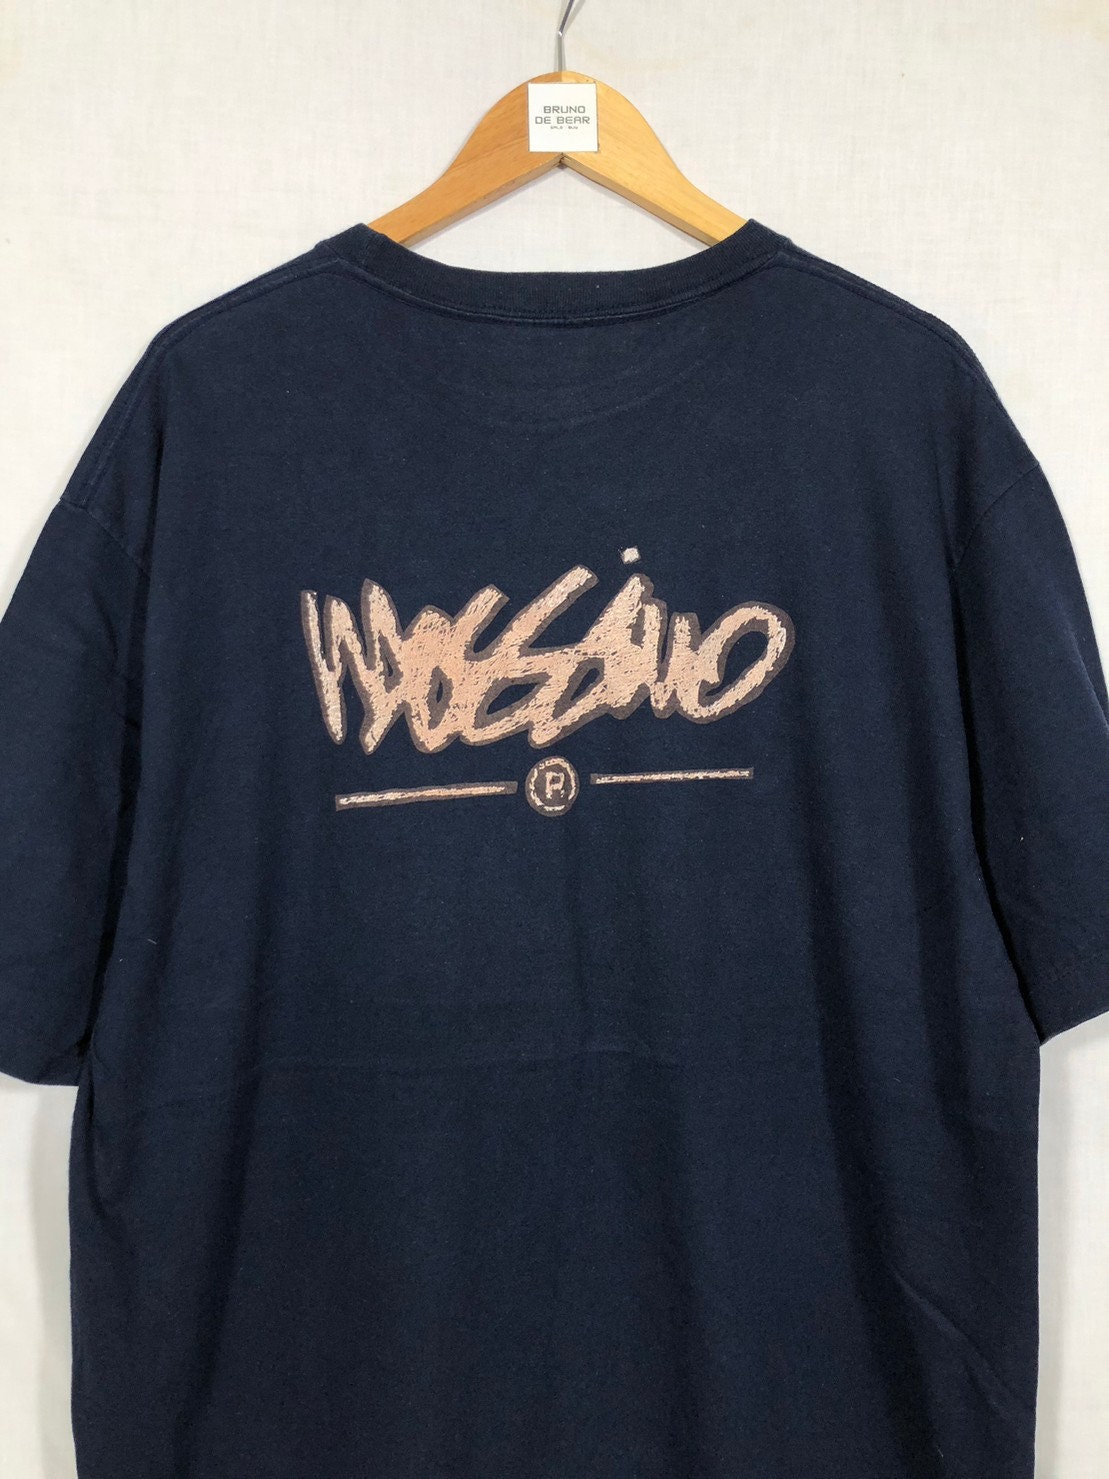 Vintage 90's Mossimo Shirt